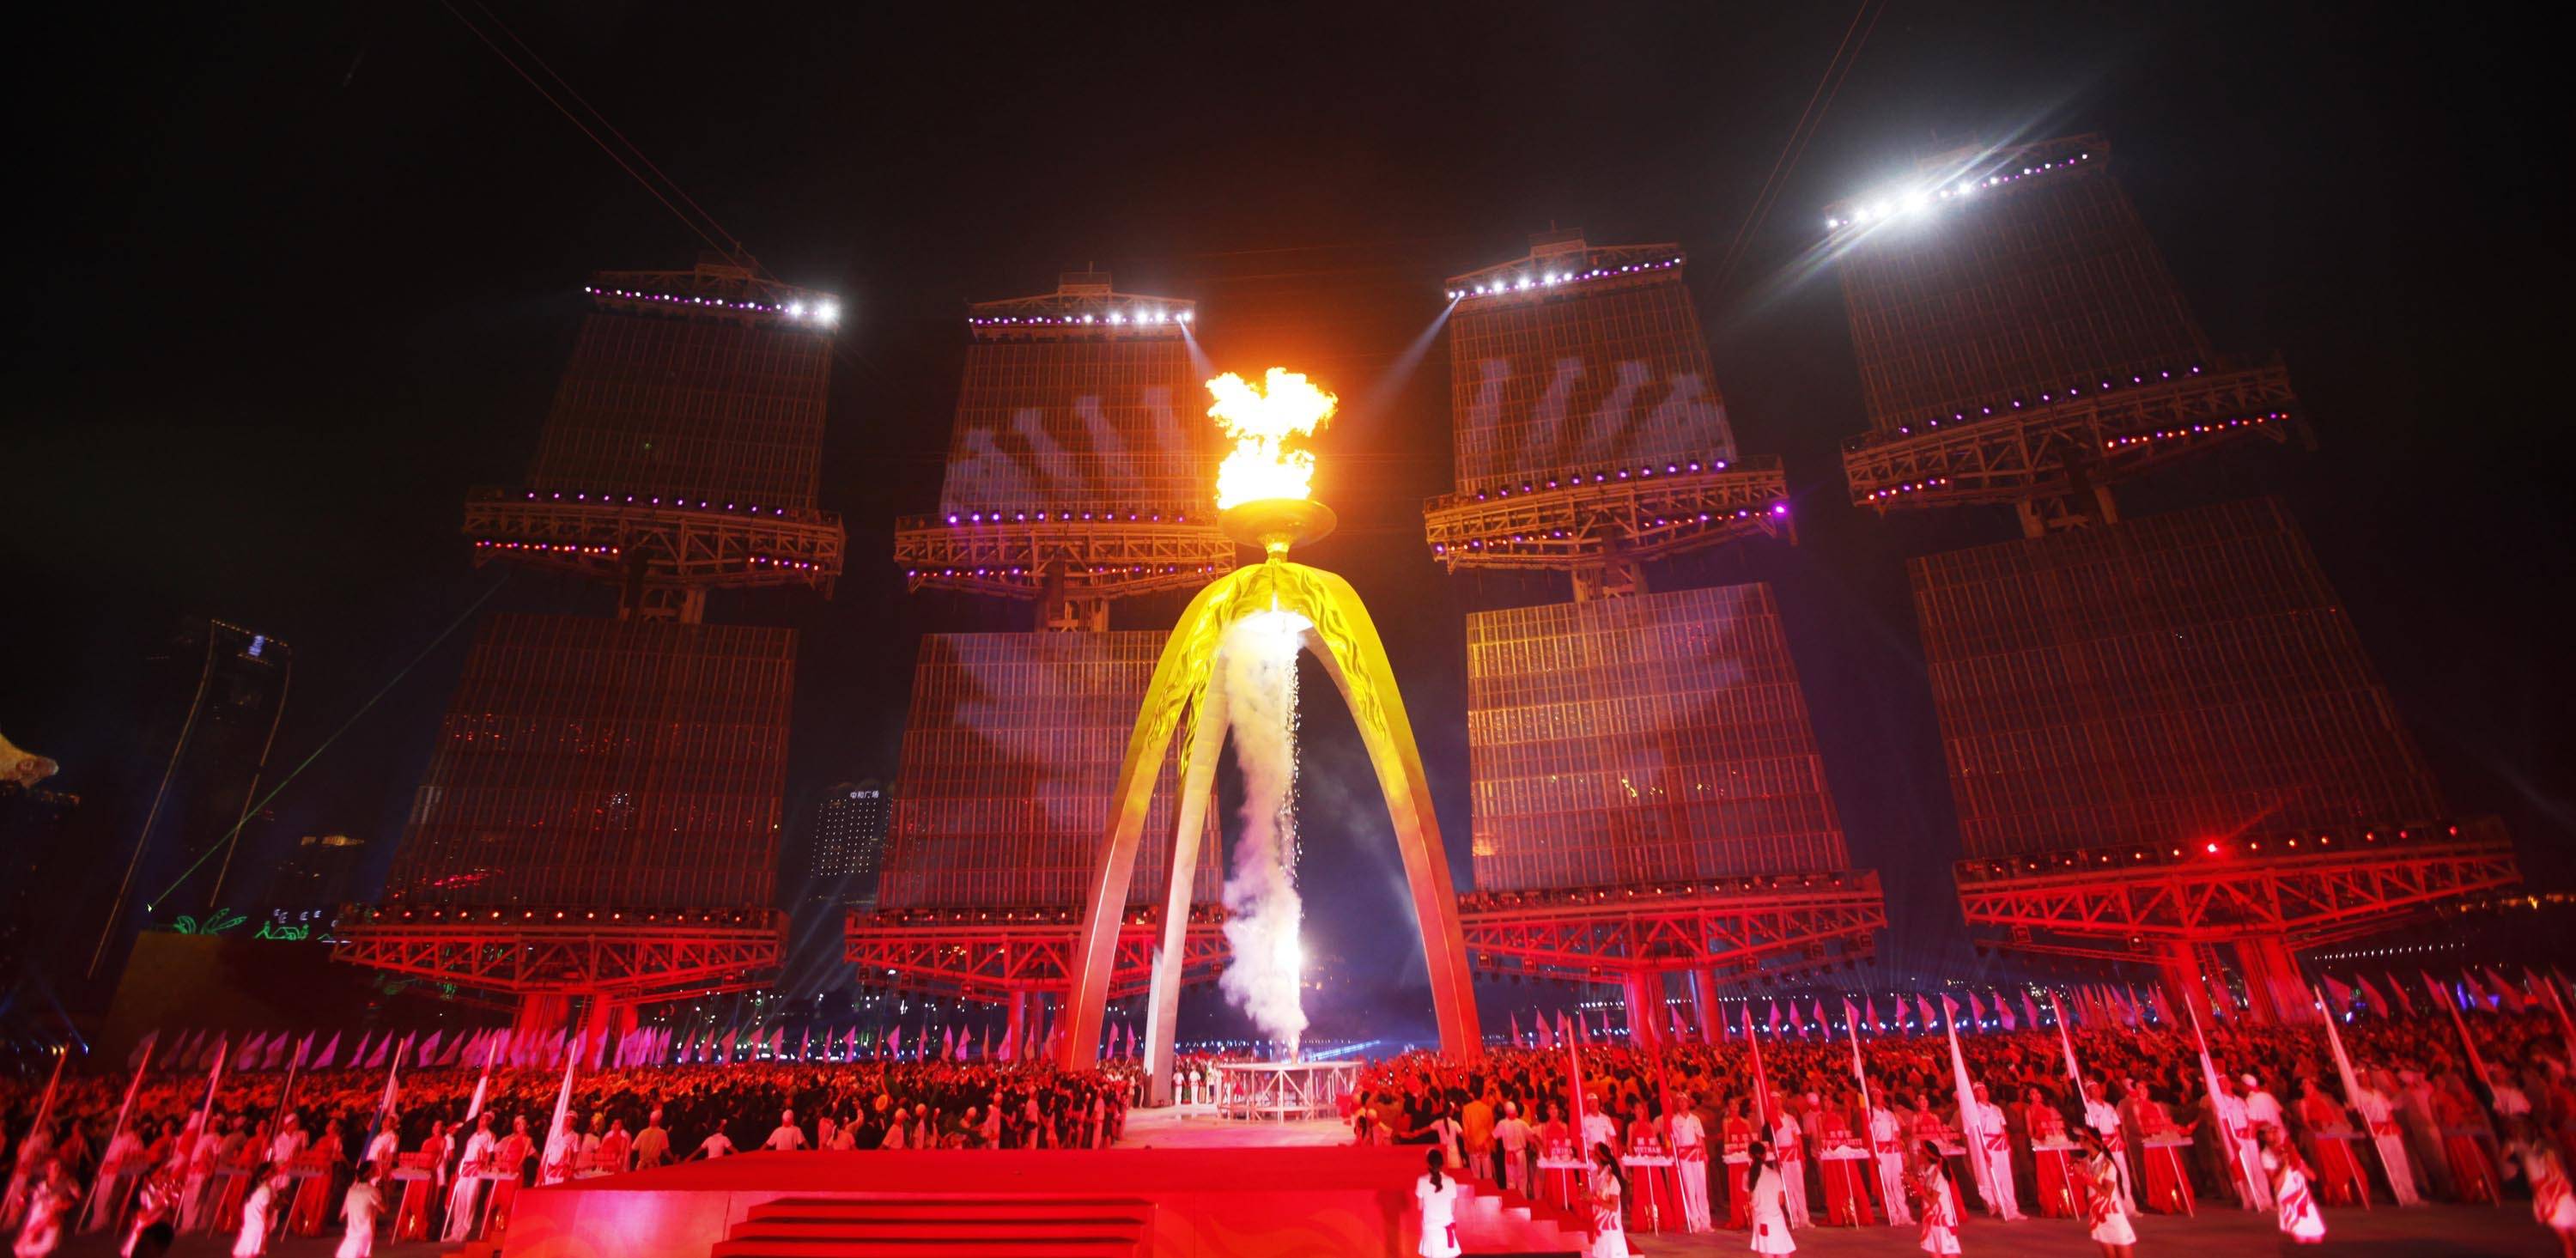 高清图:雅加达亚运开幕式 场面壮观名宿点燃圣火-搜狐大视野-搜狐新闻